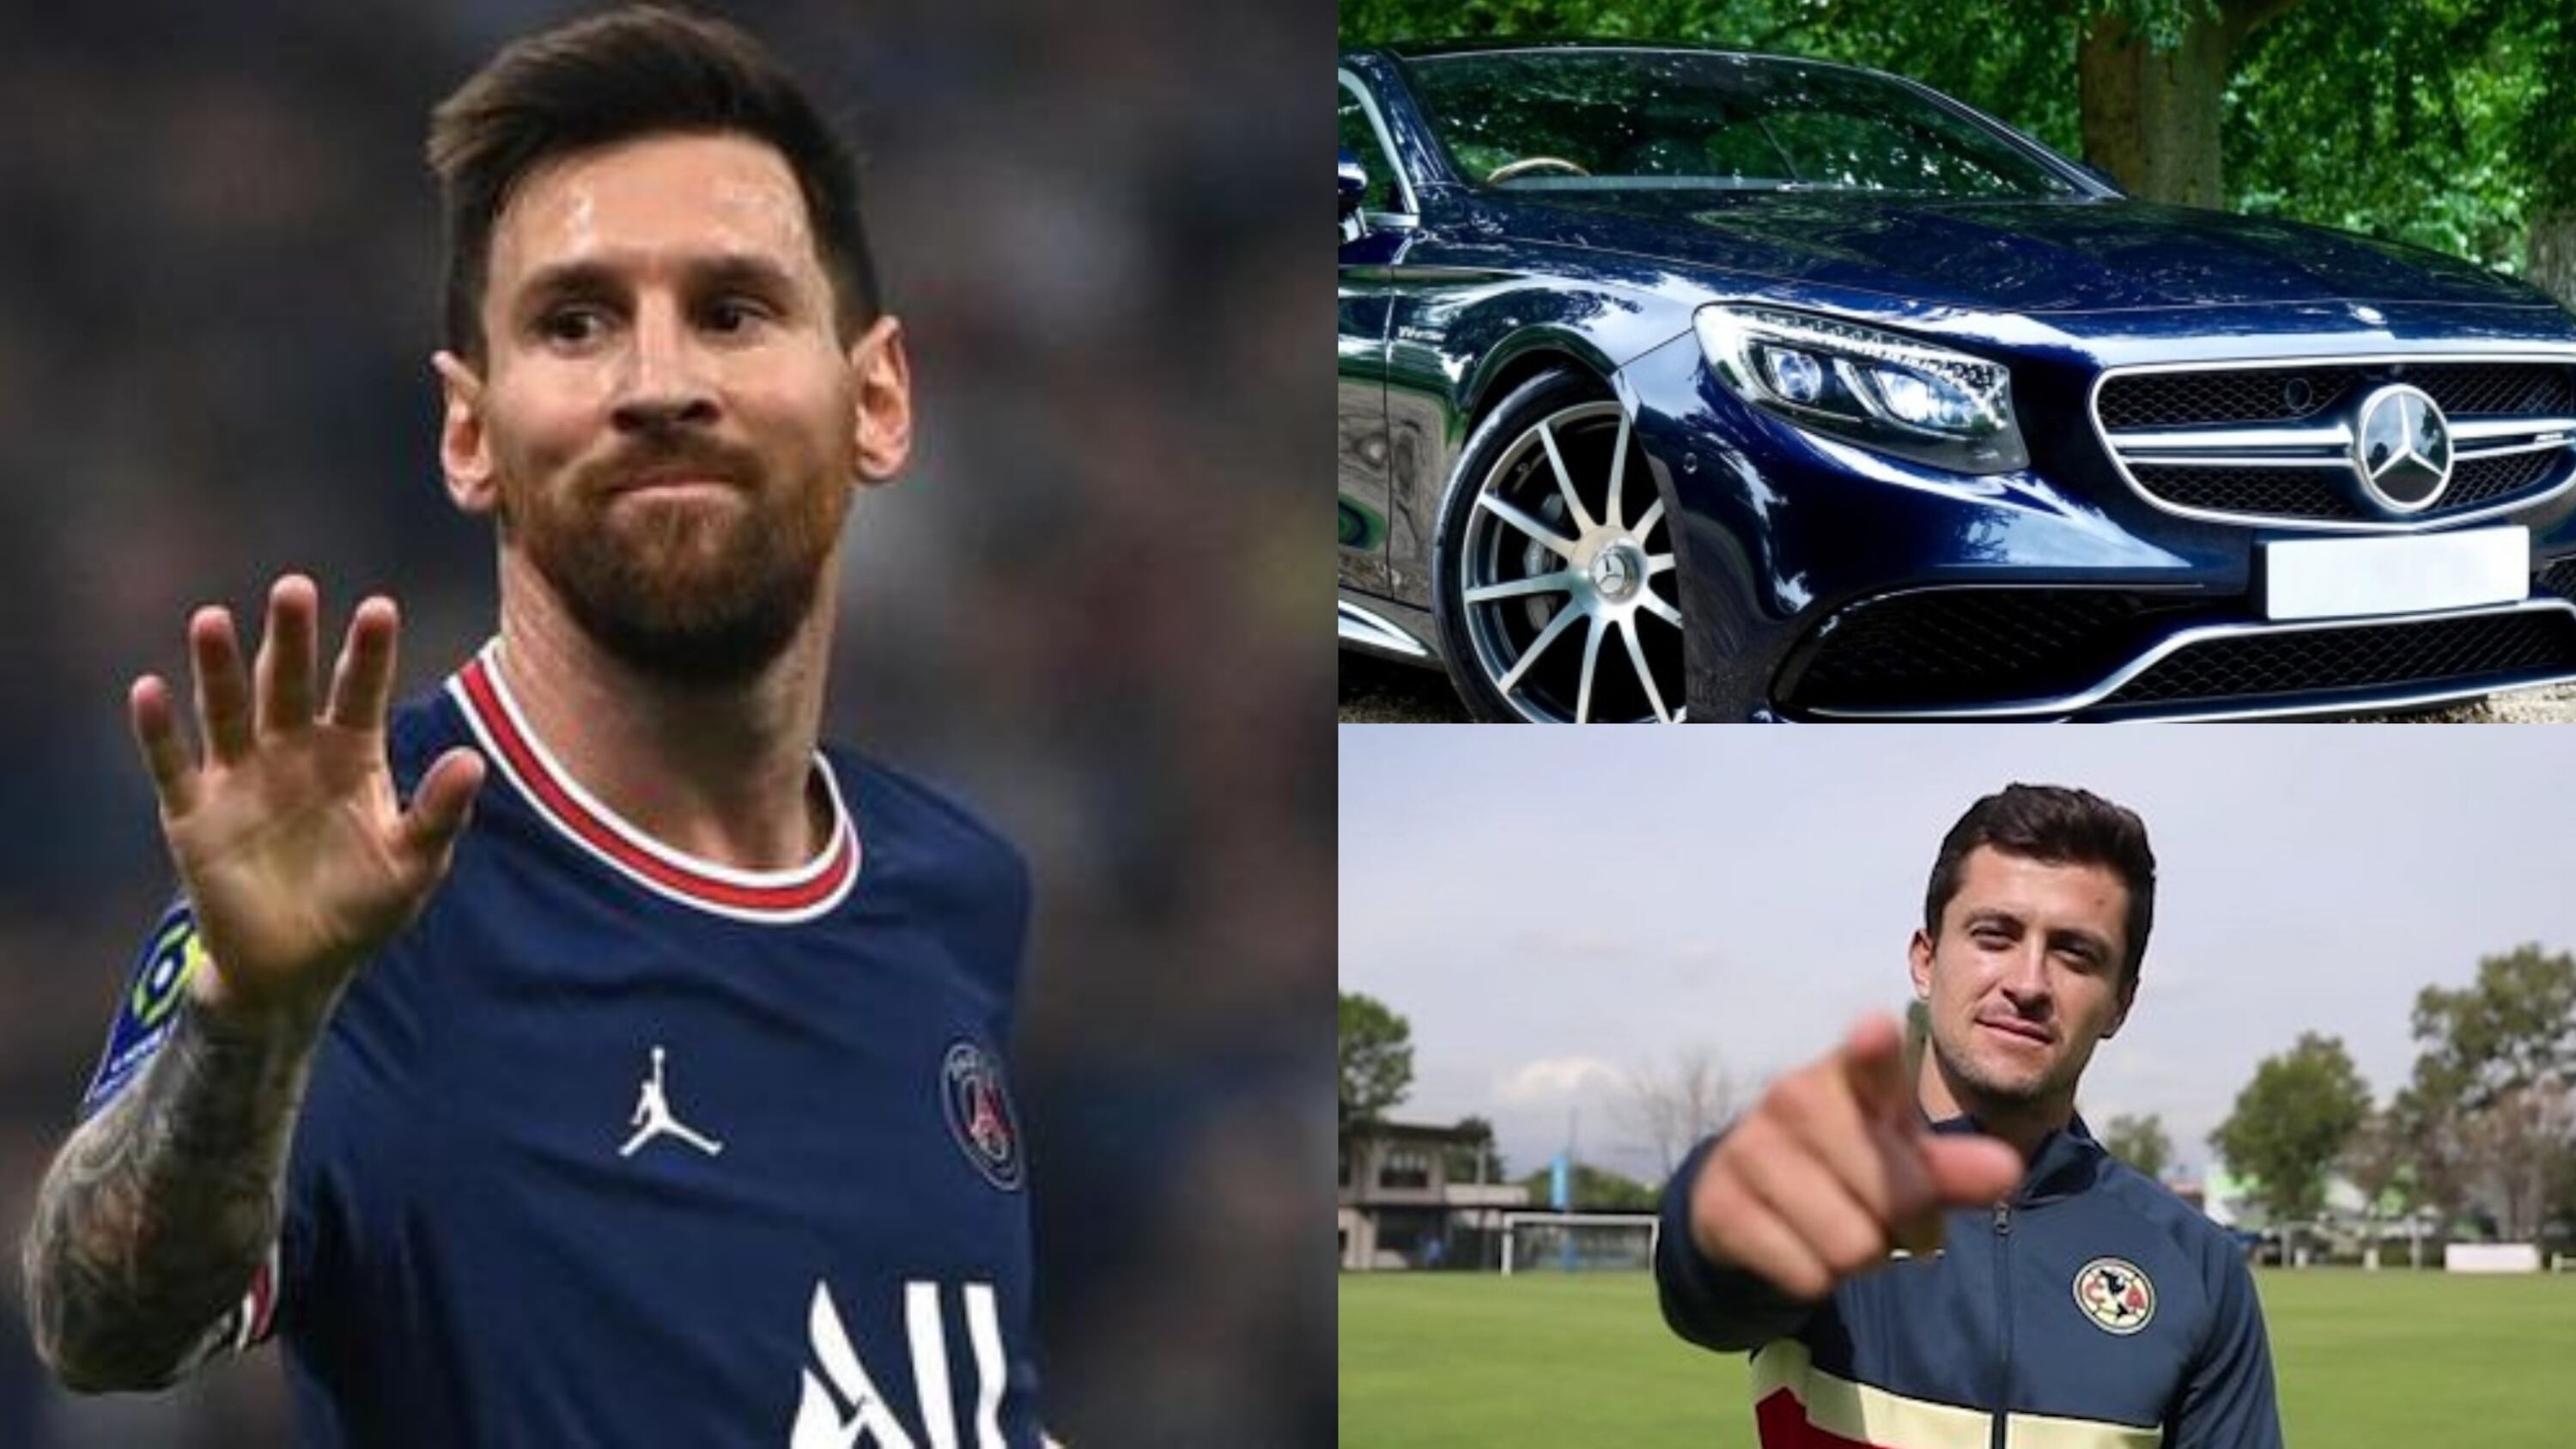 No juega a nada en América pero Madrigal tiene el mismo coche que Lionel Messi